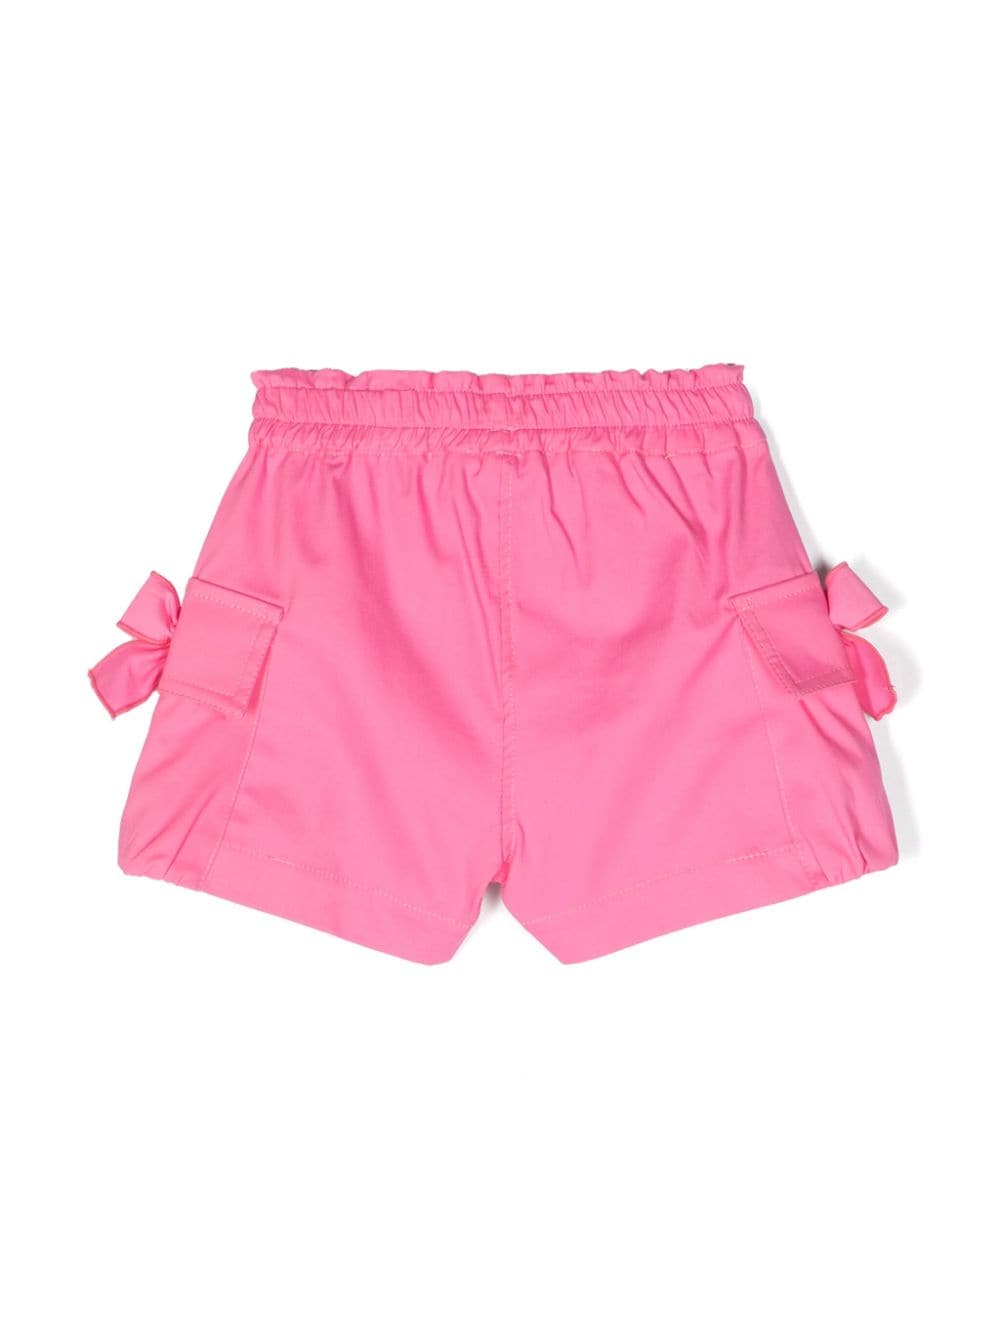 Shorts neonata rosa pastello